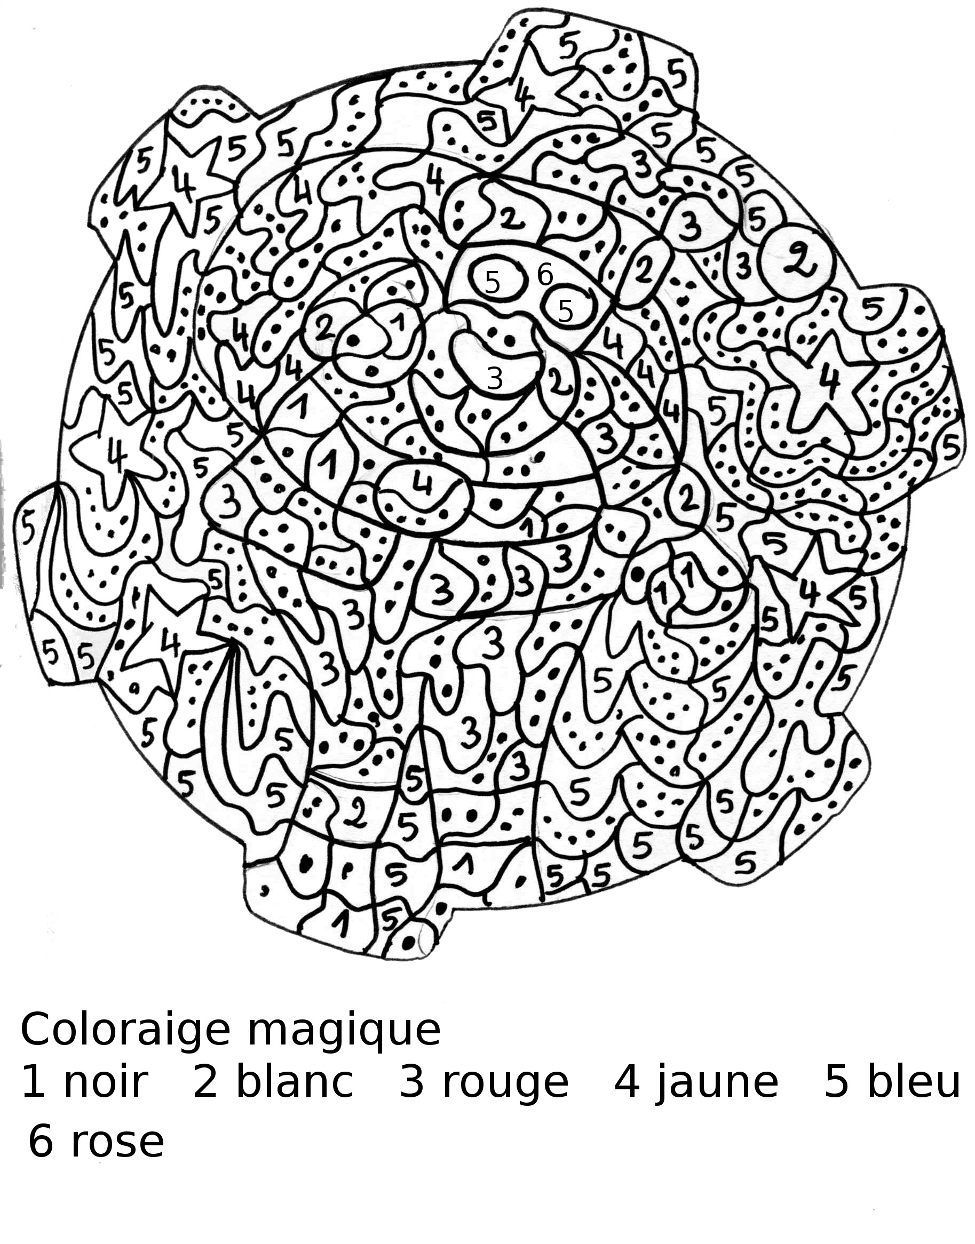 Image #19854 - Coloriage dessin à numéro gratuit